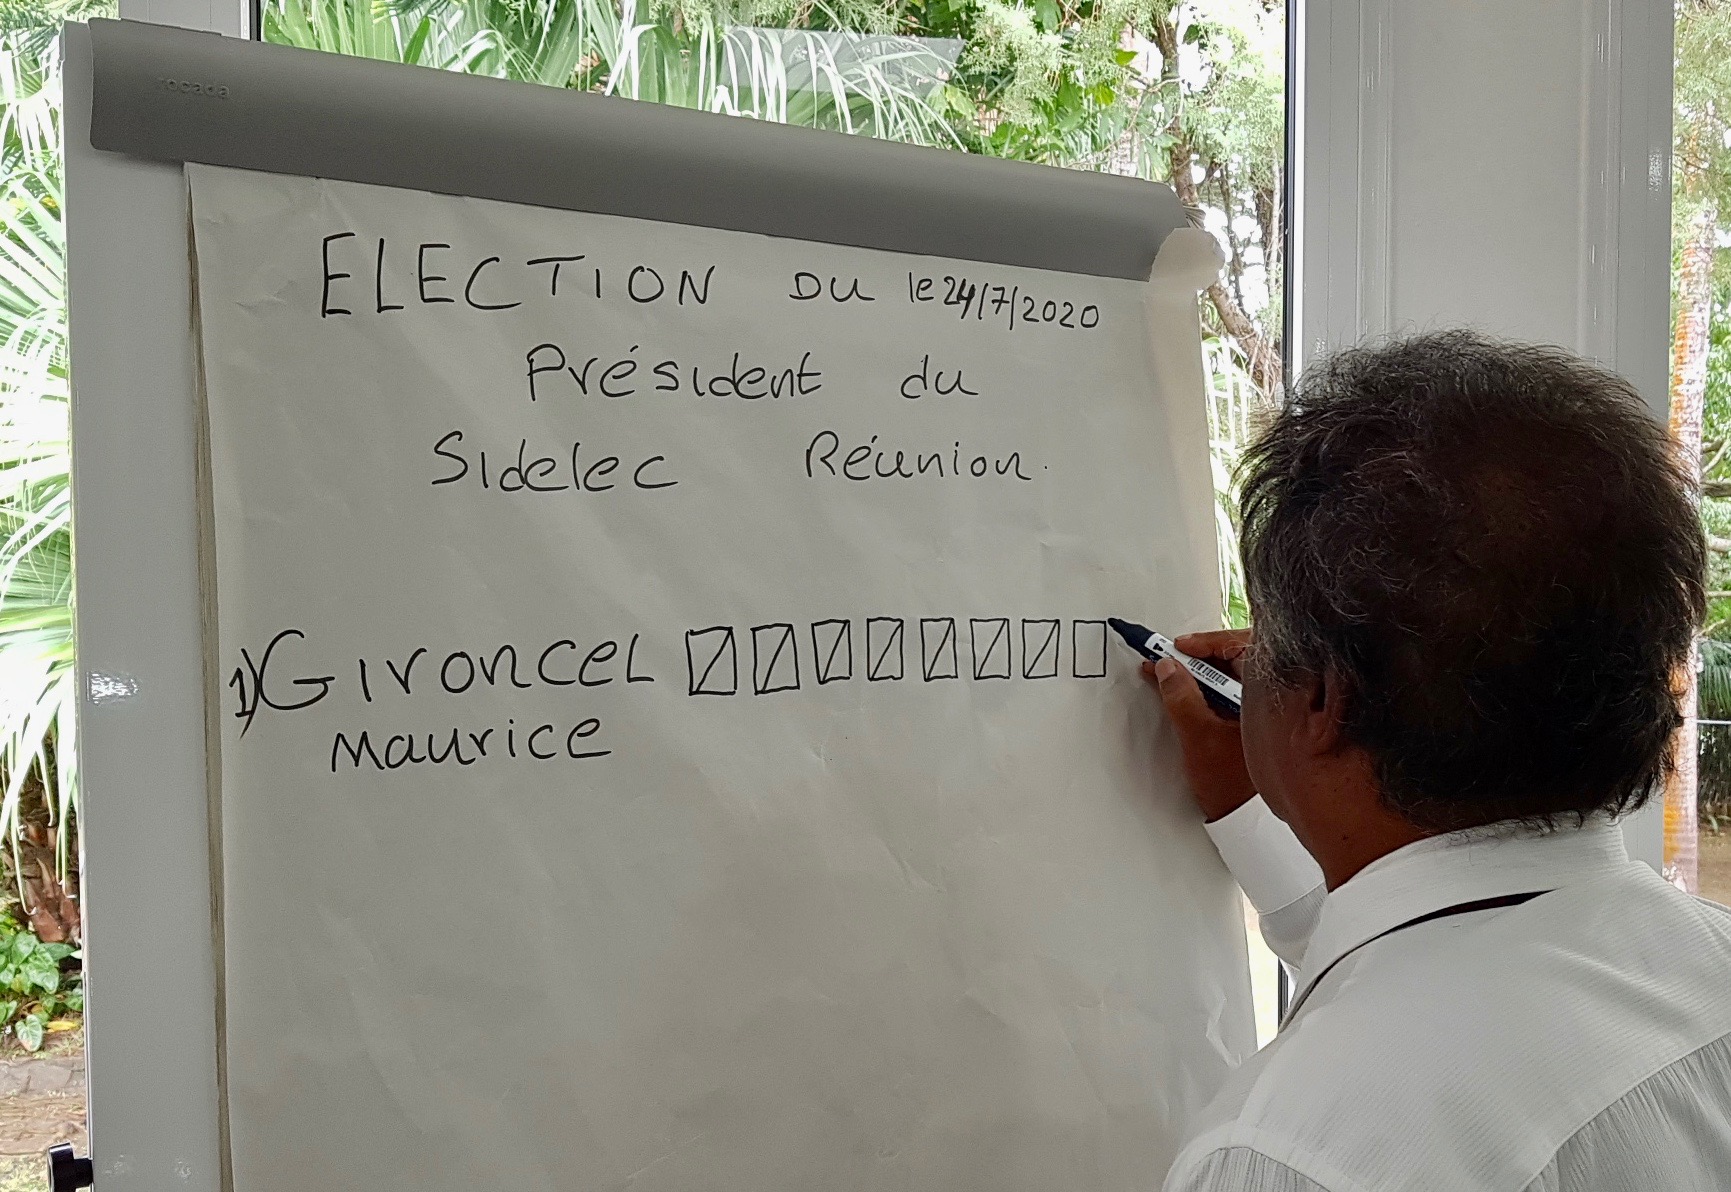 Maurice Gironcel réélu à la présidence du Sidélec avec 100% des voix